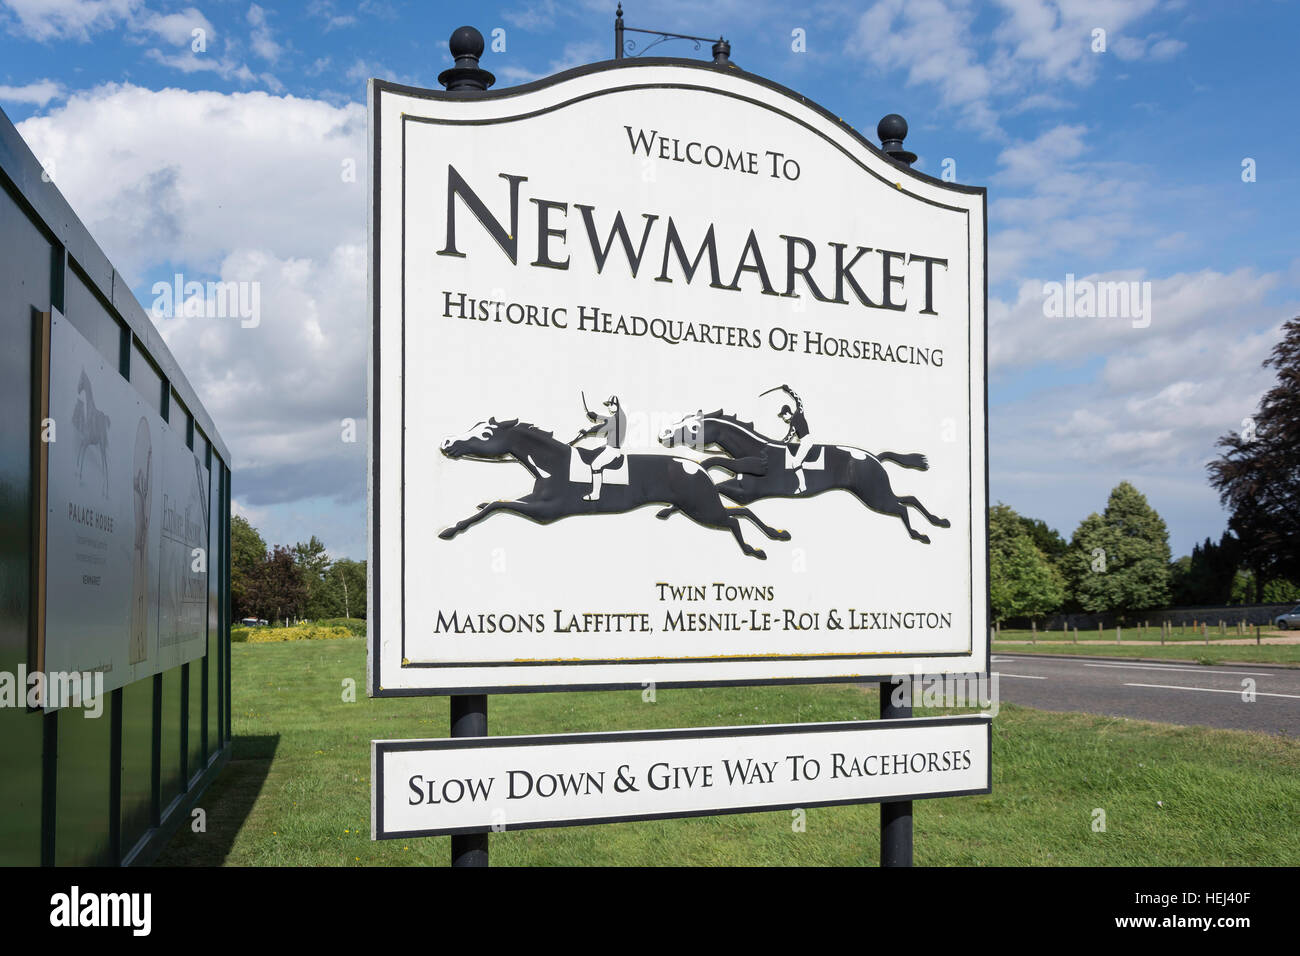 Bienvenue à Newmarket panneau routier à l'entrée de High Street, Newmarket, Suffolk, Angleterre, Royaume-Uni Banque D'Images